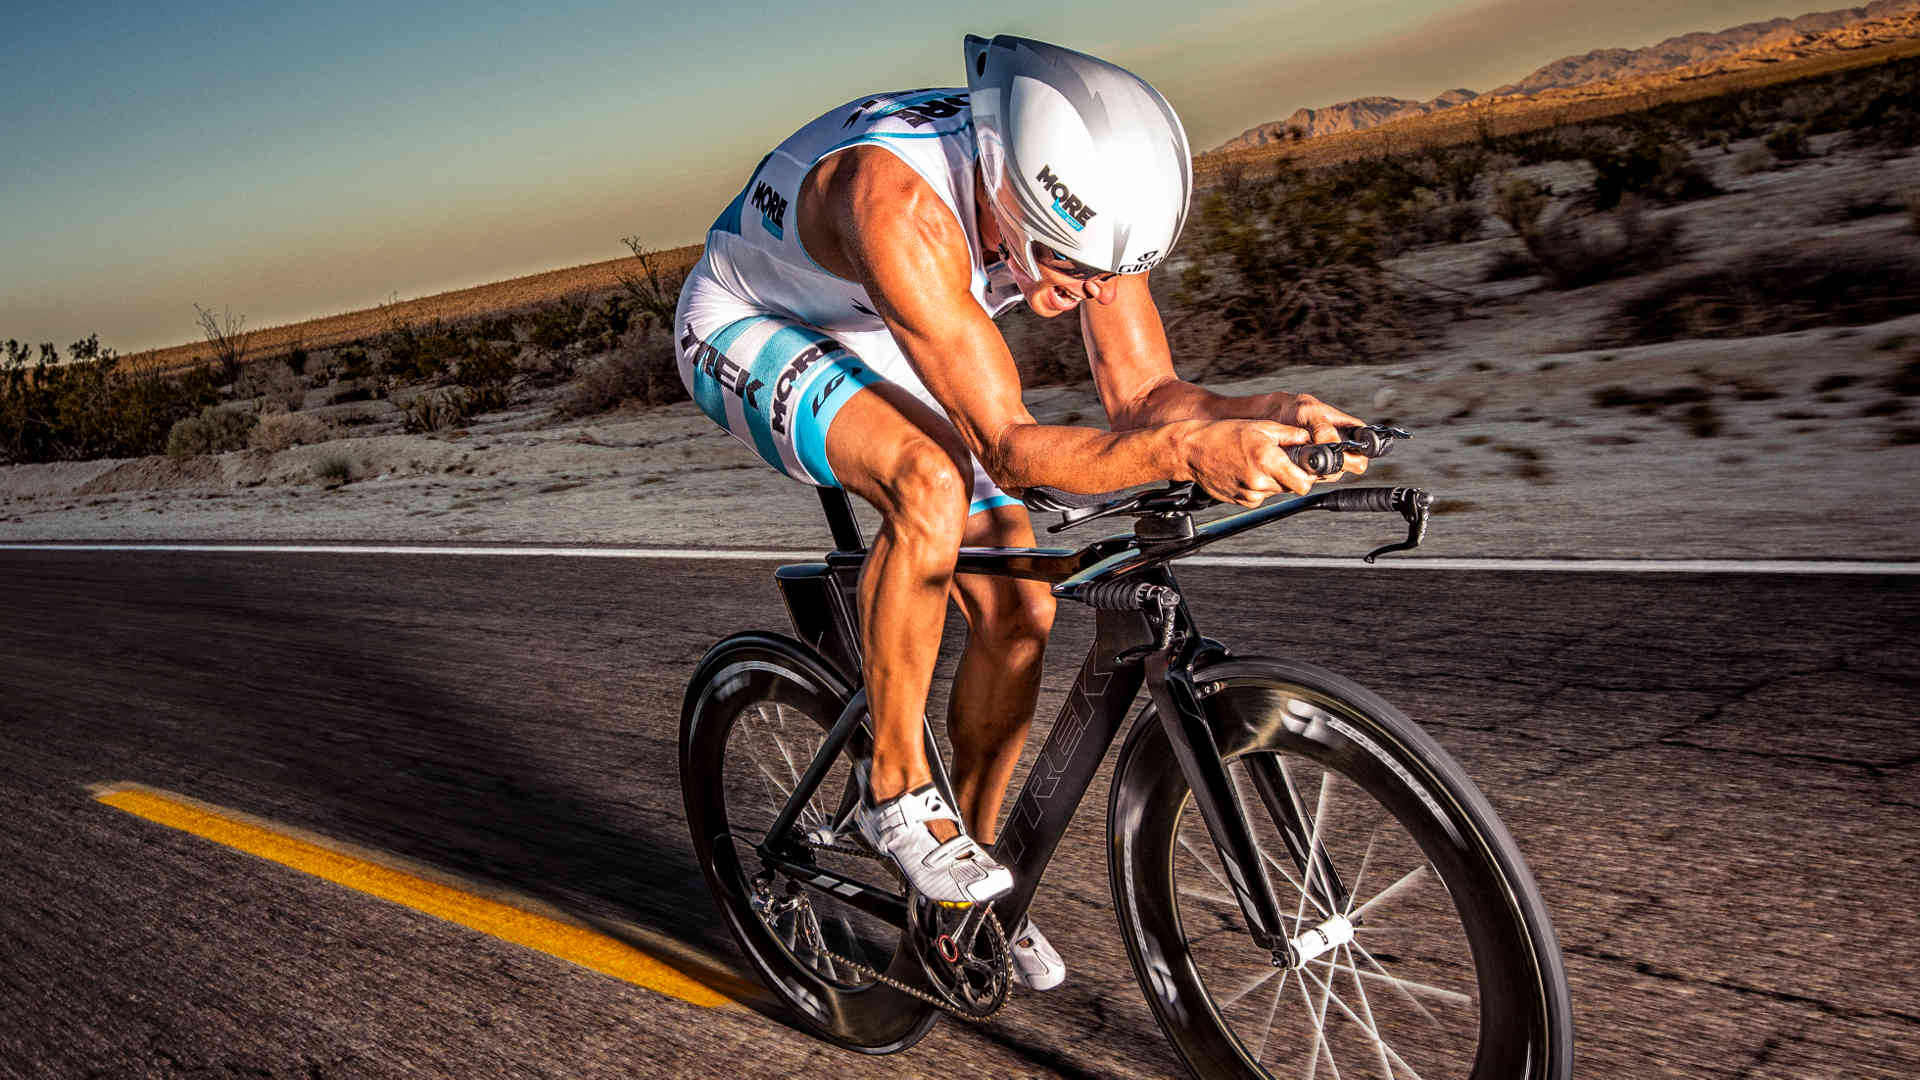 Triathlon Sport Pictures Desktop Wallpaper Image